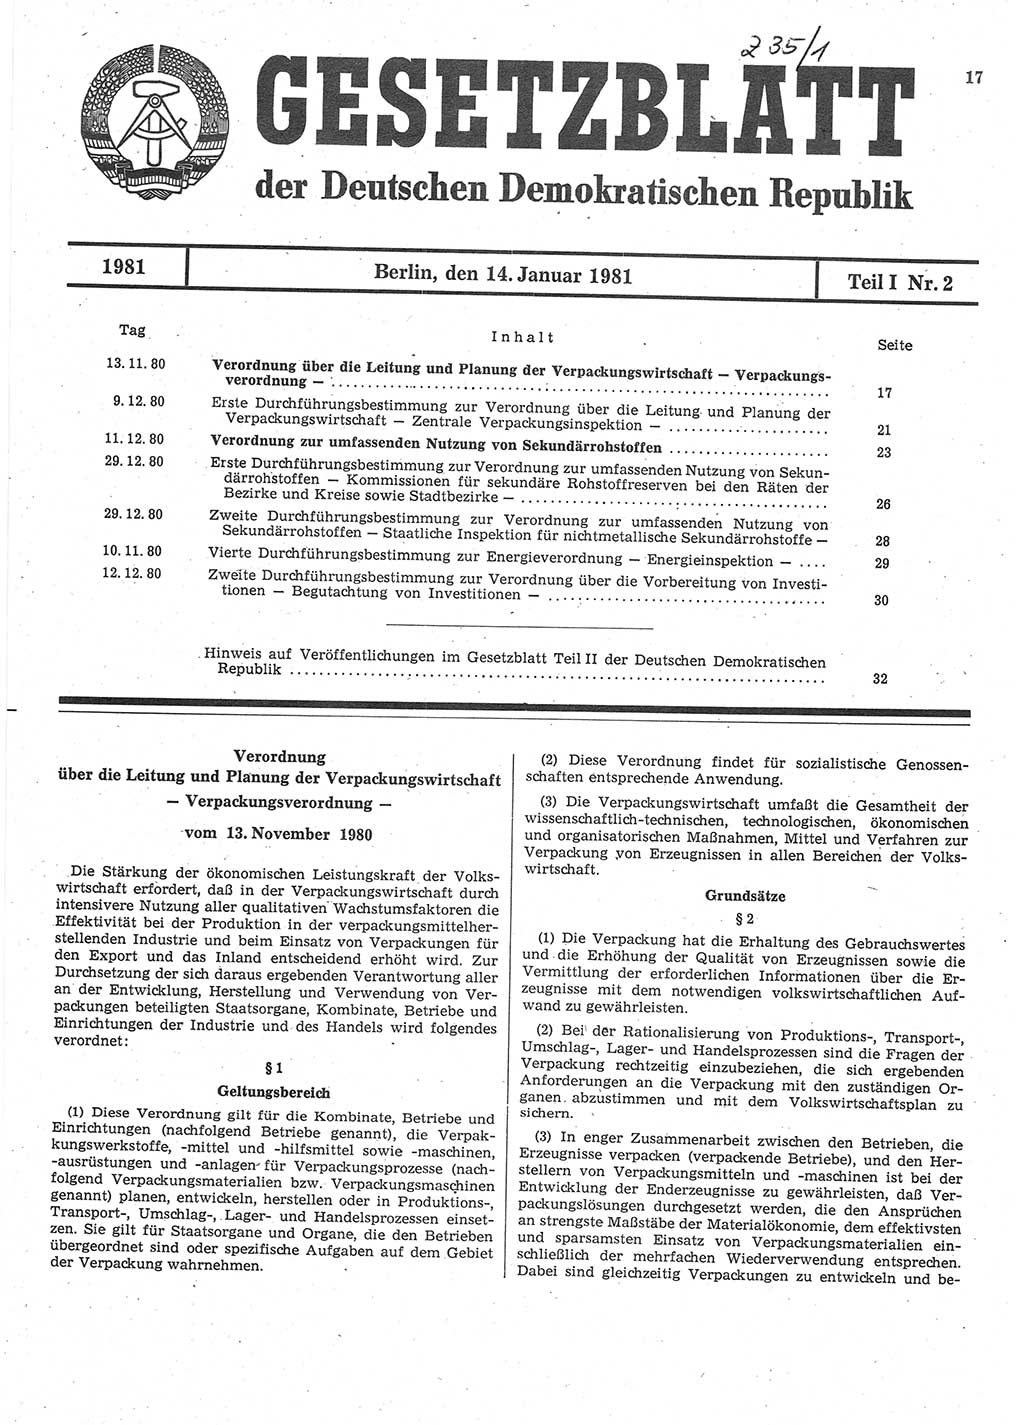 Gesetzblatt (GBl.) der Deutschen Demokratischen Republik (DDR) Teil Ⅰ 1981, Seite 17 (GBl. DDR Ⅰ 1981, S. 17)